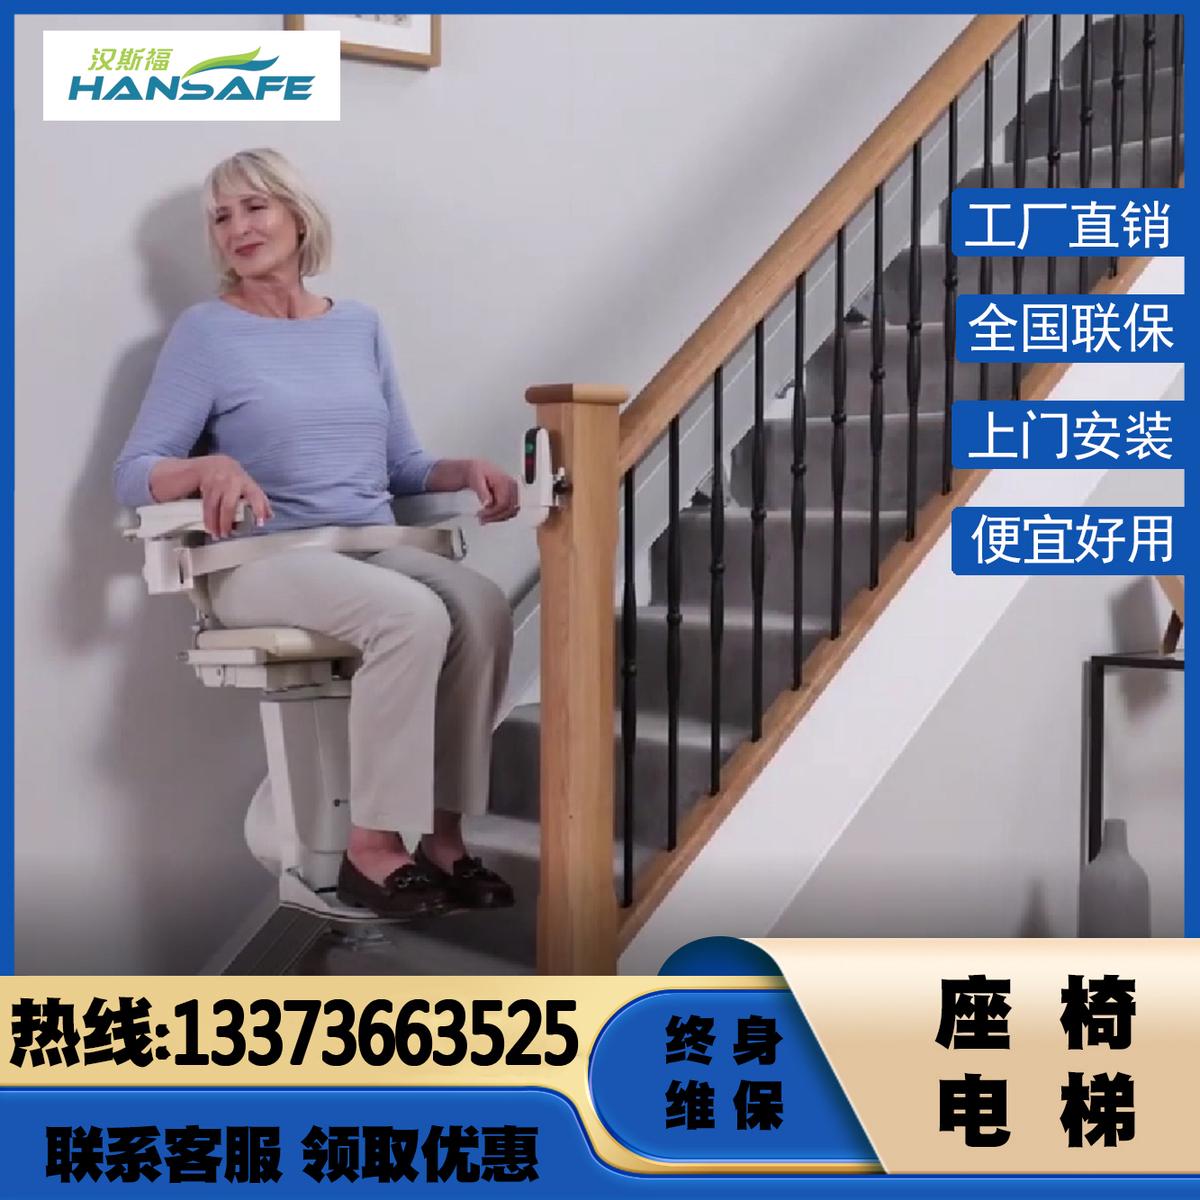 汉斯福家用楼道直线曲线别墅扶手座椅电梯老人上下楼梯爬楼机神器